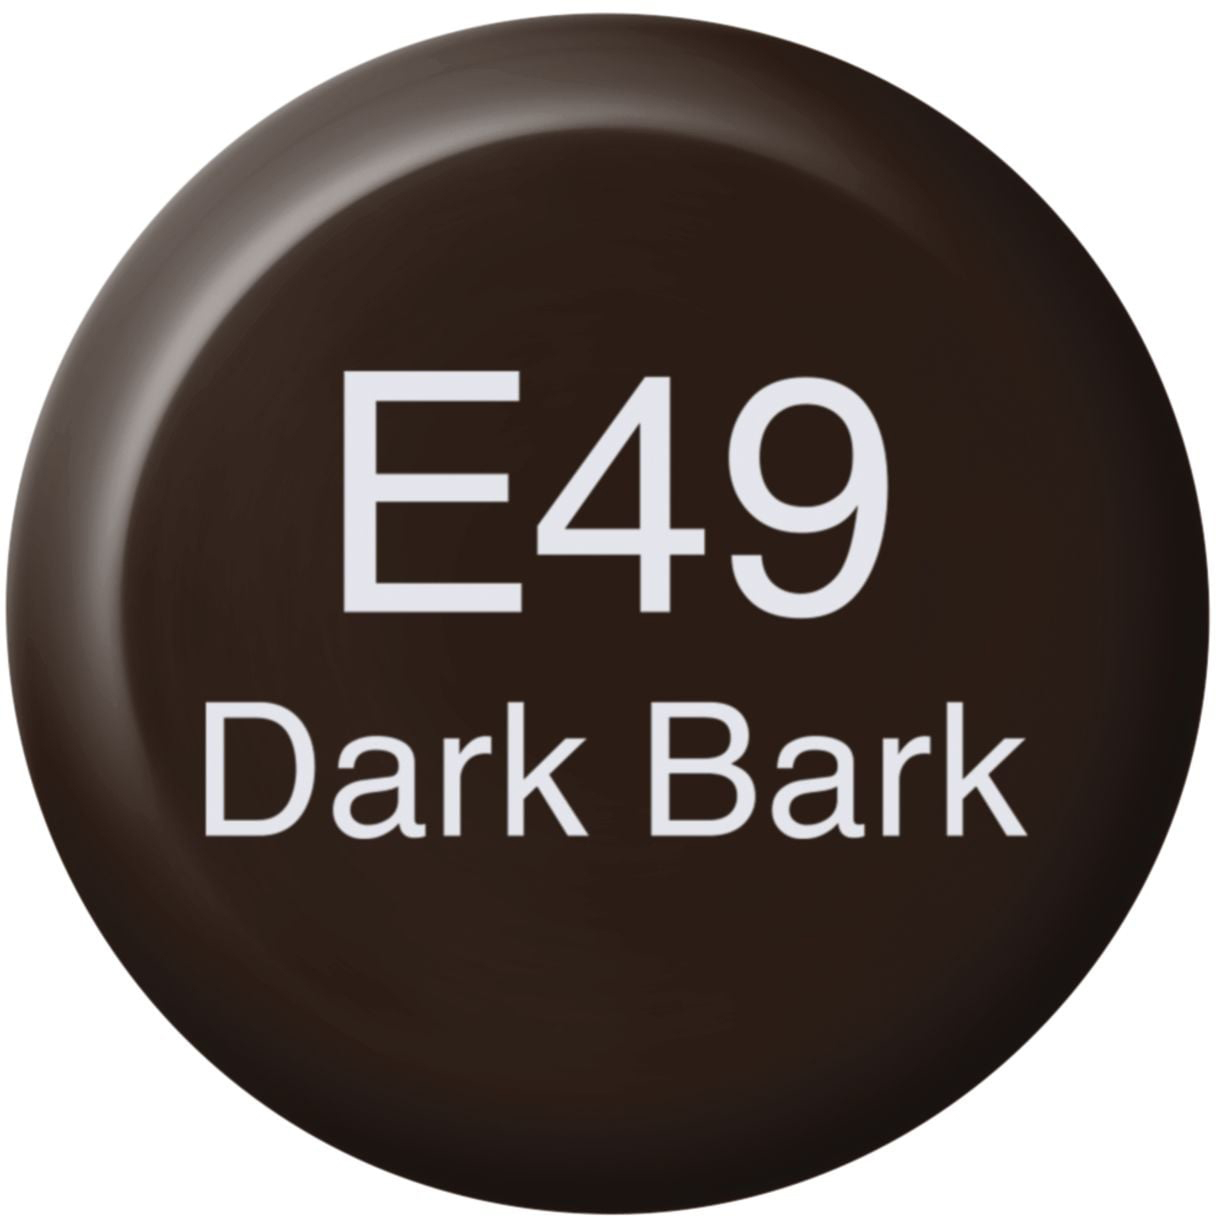 COPIC Ink Refill 21076122 E49 - Dark Bark E49 - Dark Bark